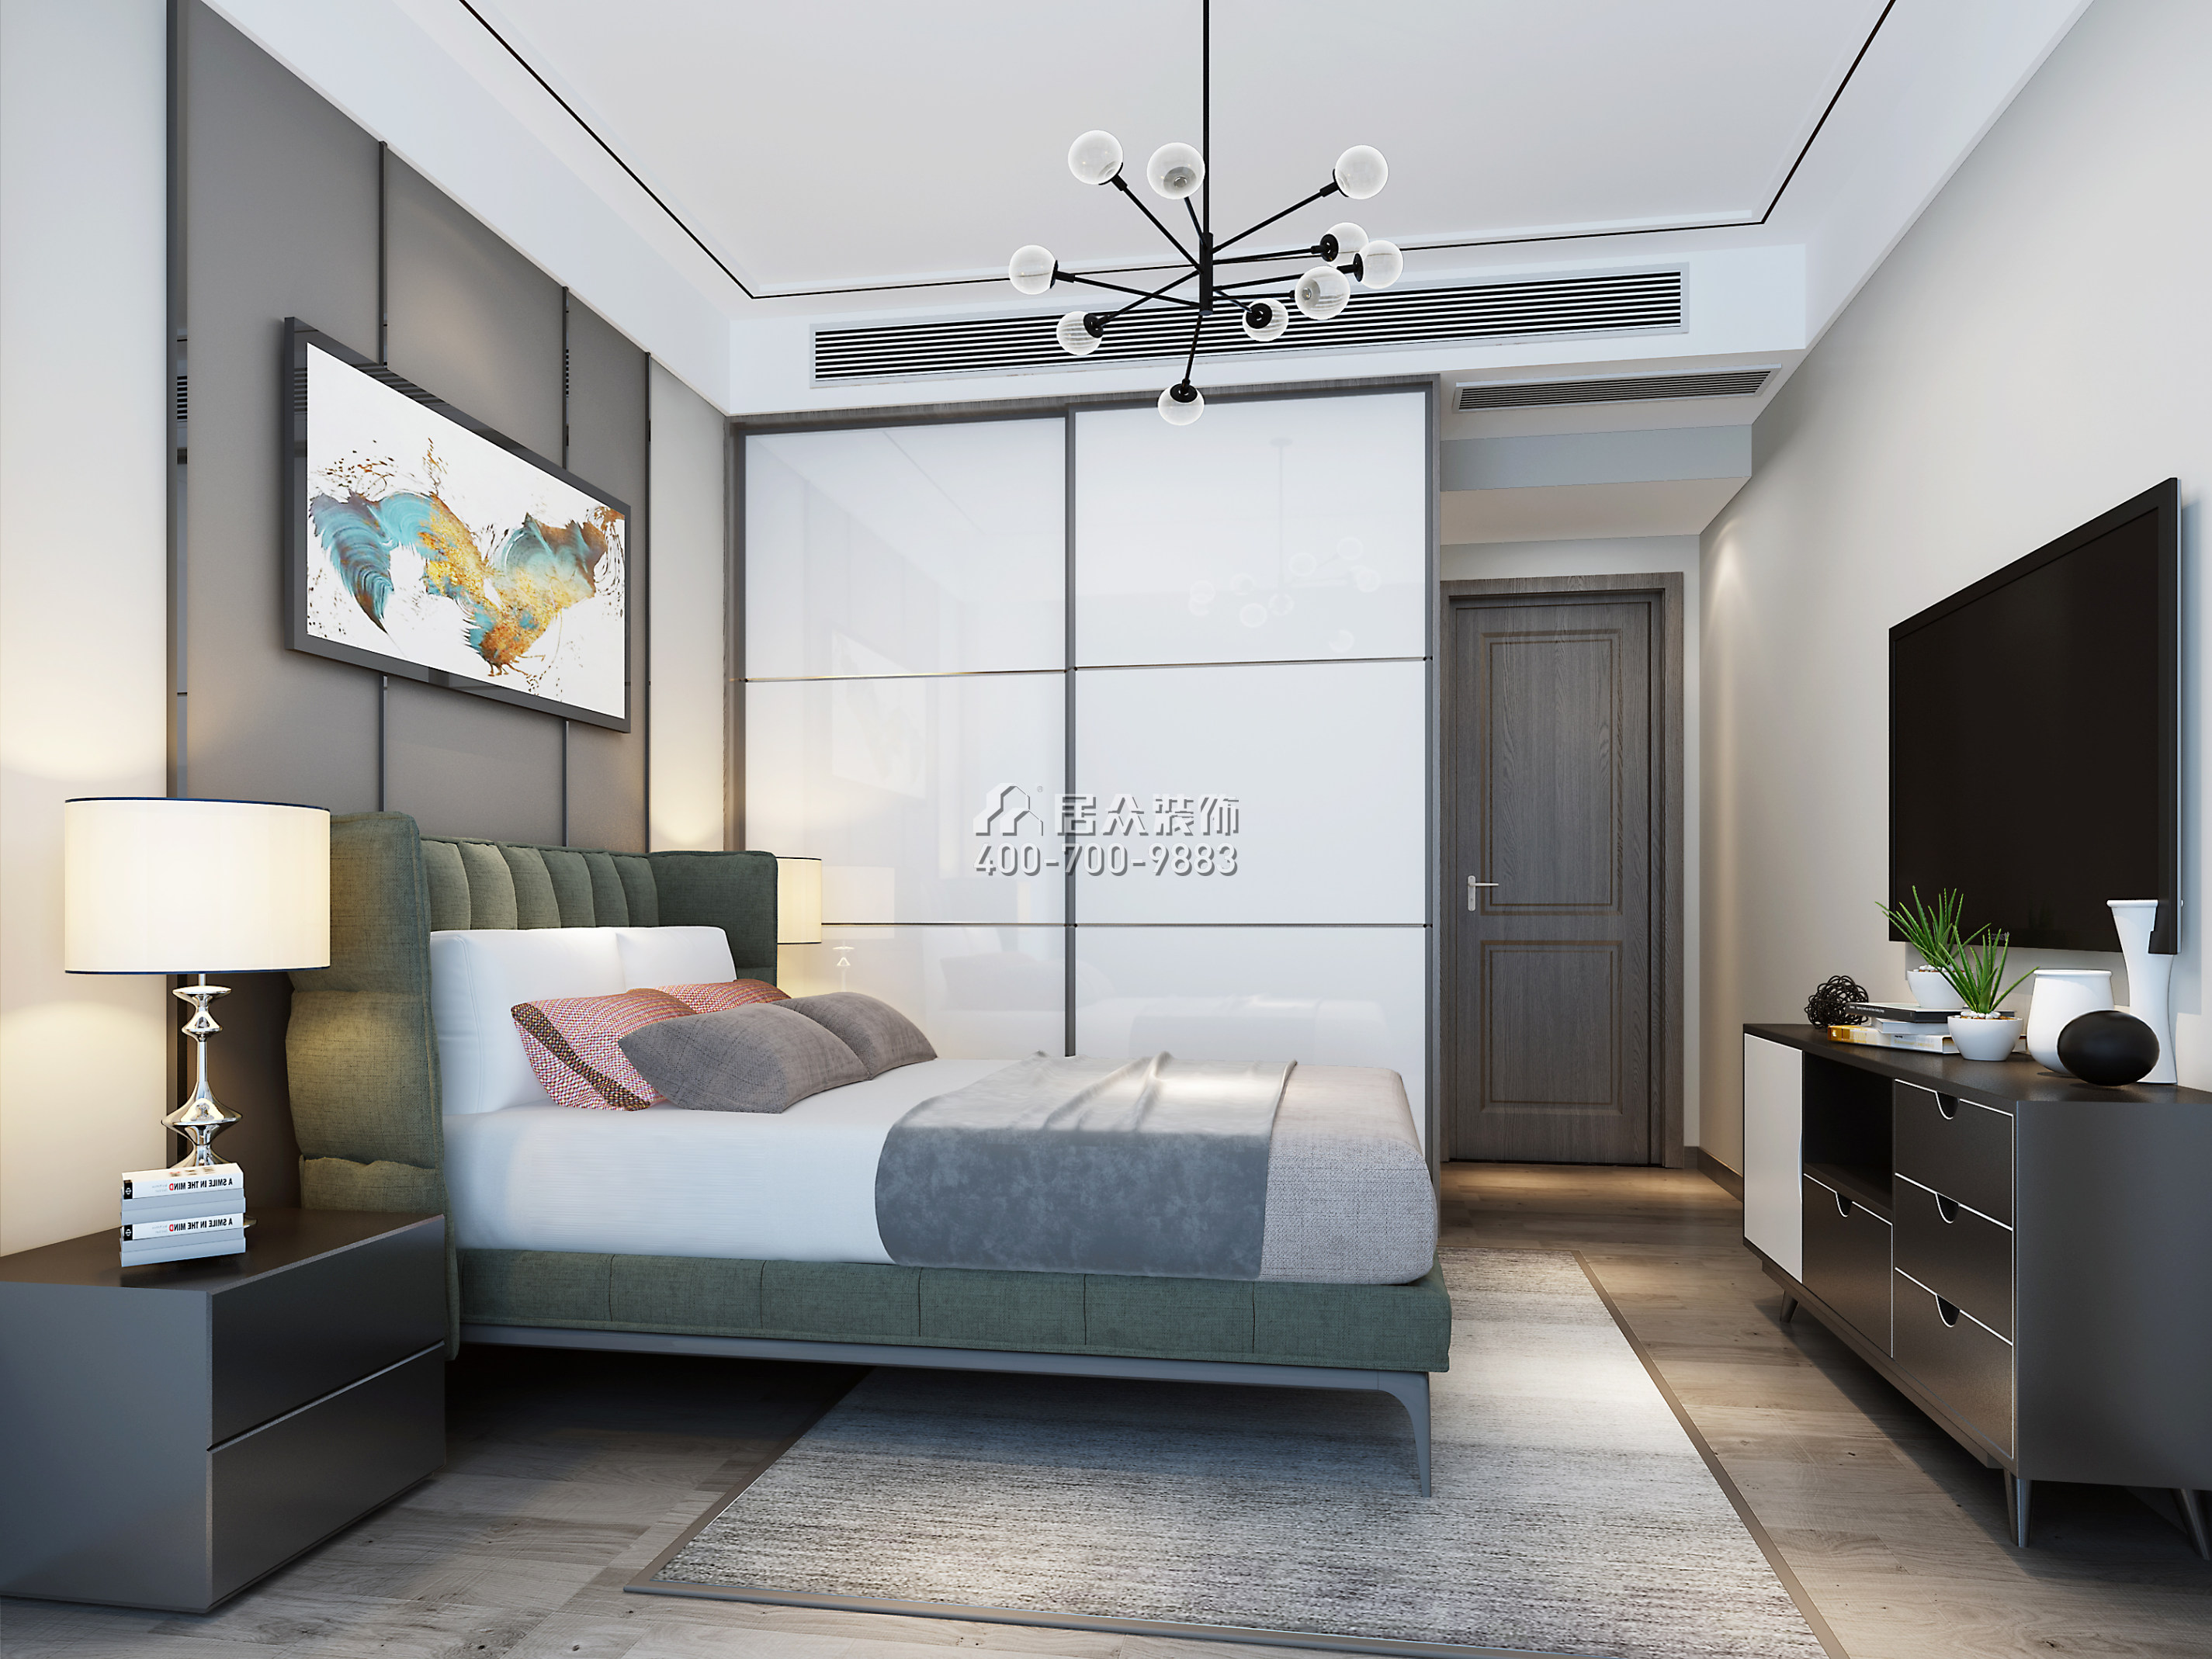 联投东方华府二期105平方米中式风格平层户型卧室装修效果图